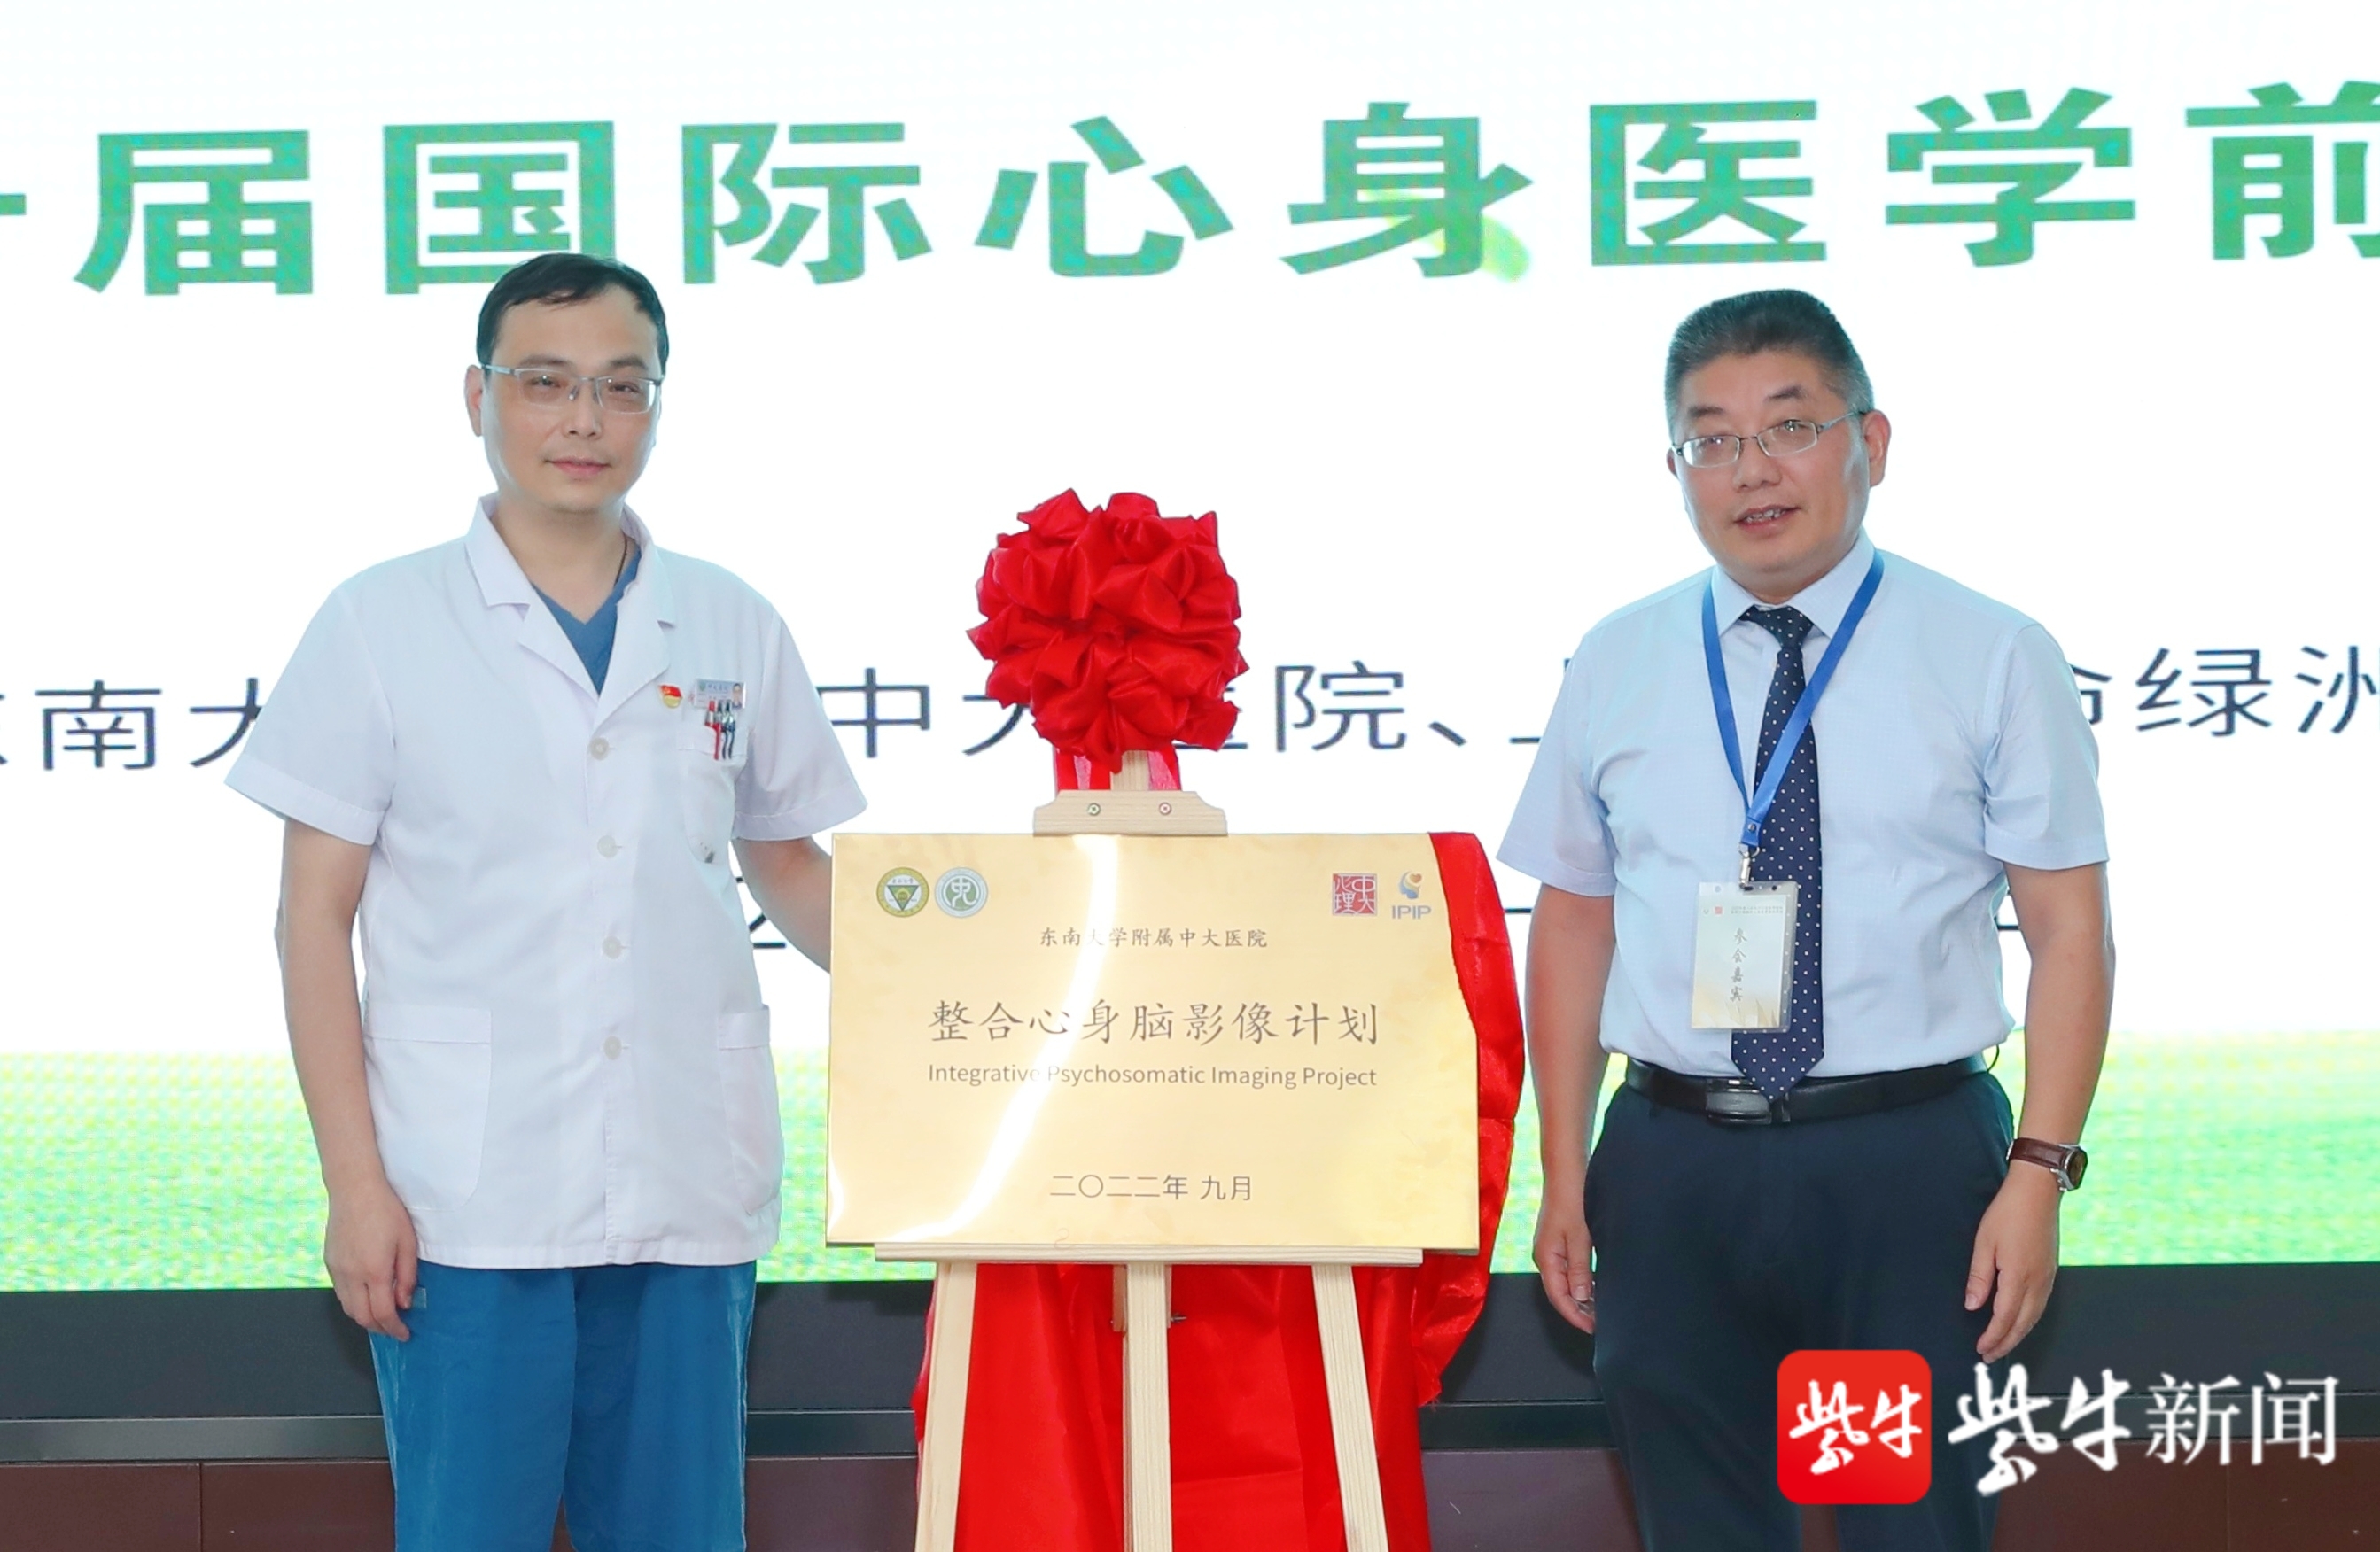 国内首个整合心身脑影像计划在南京启动